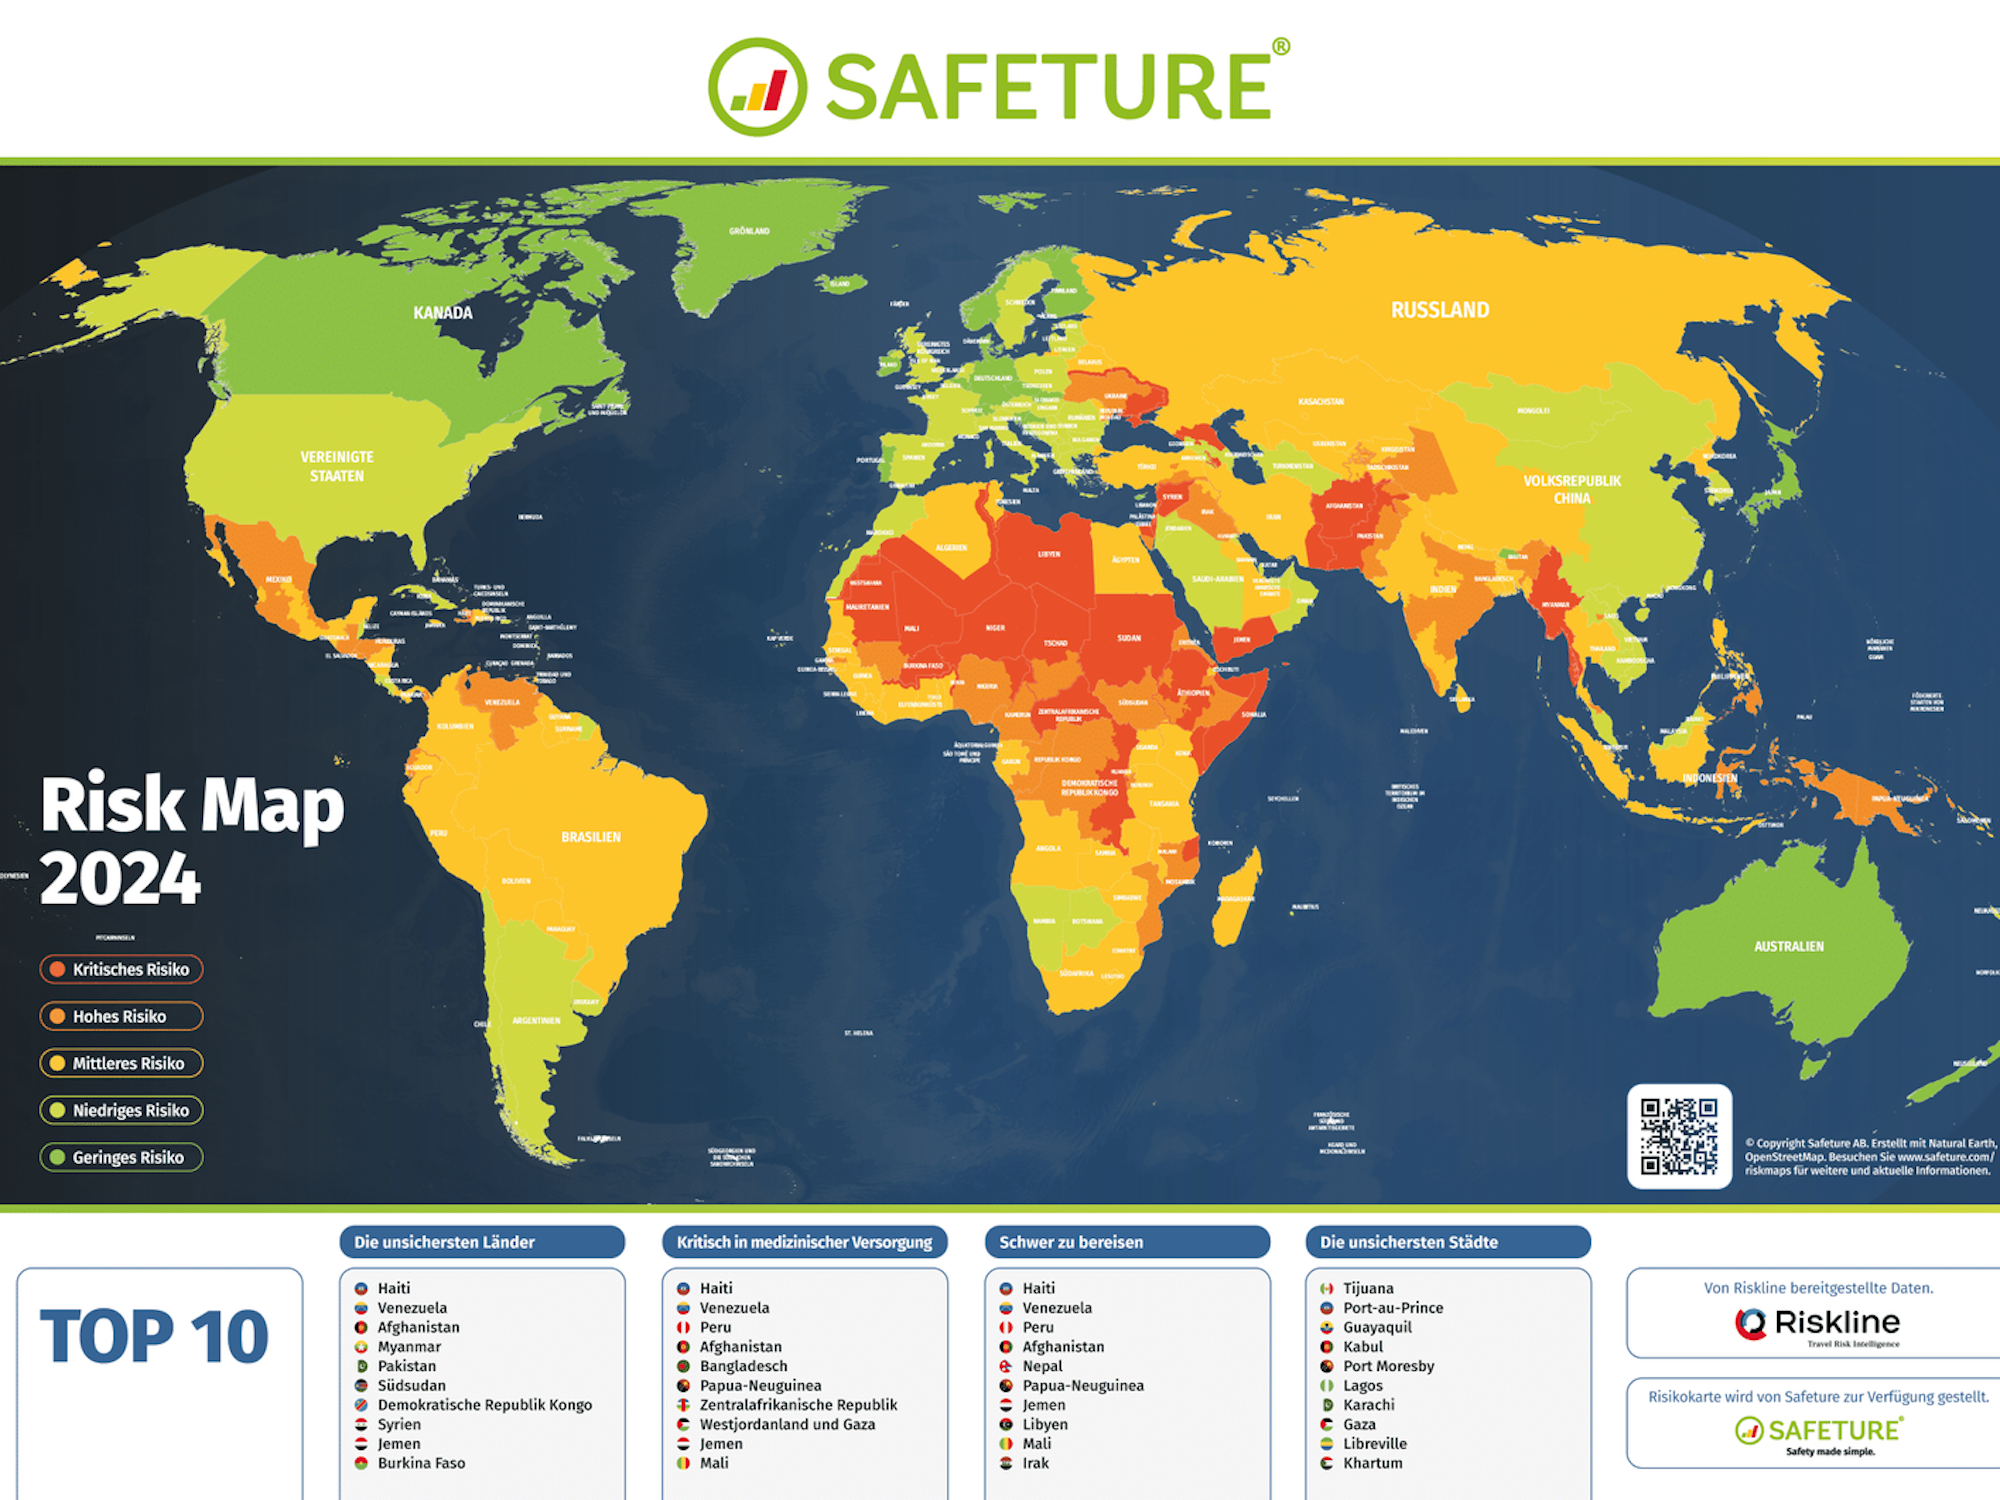 Hier zu sehen: Die Weltkarte der Plattform „Safeture“, welche in den Farben rot, orange, gelb, hellgrün und dunkelgrün die Länder nach ihrer Sicherheit bewertet.